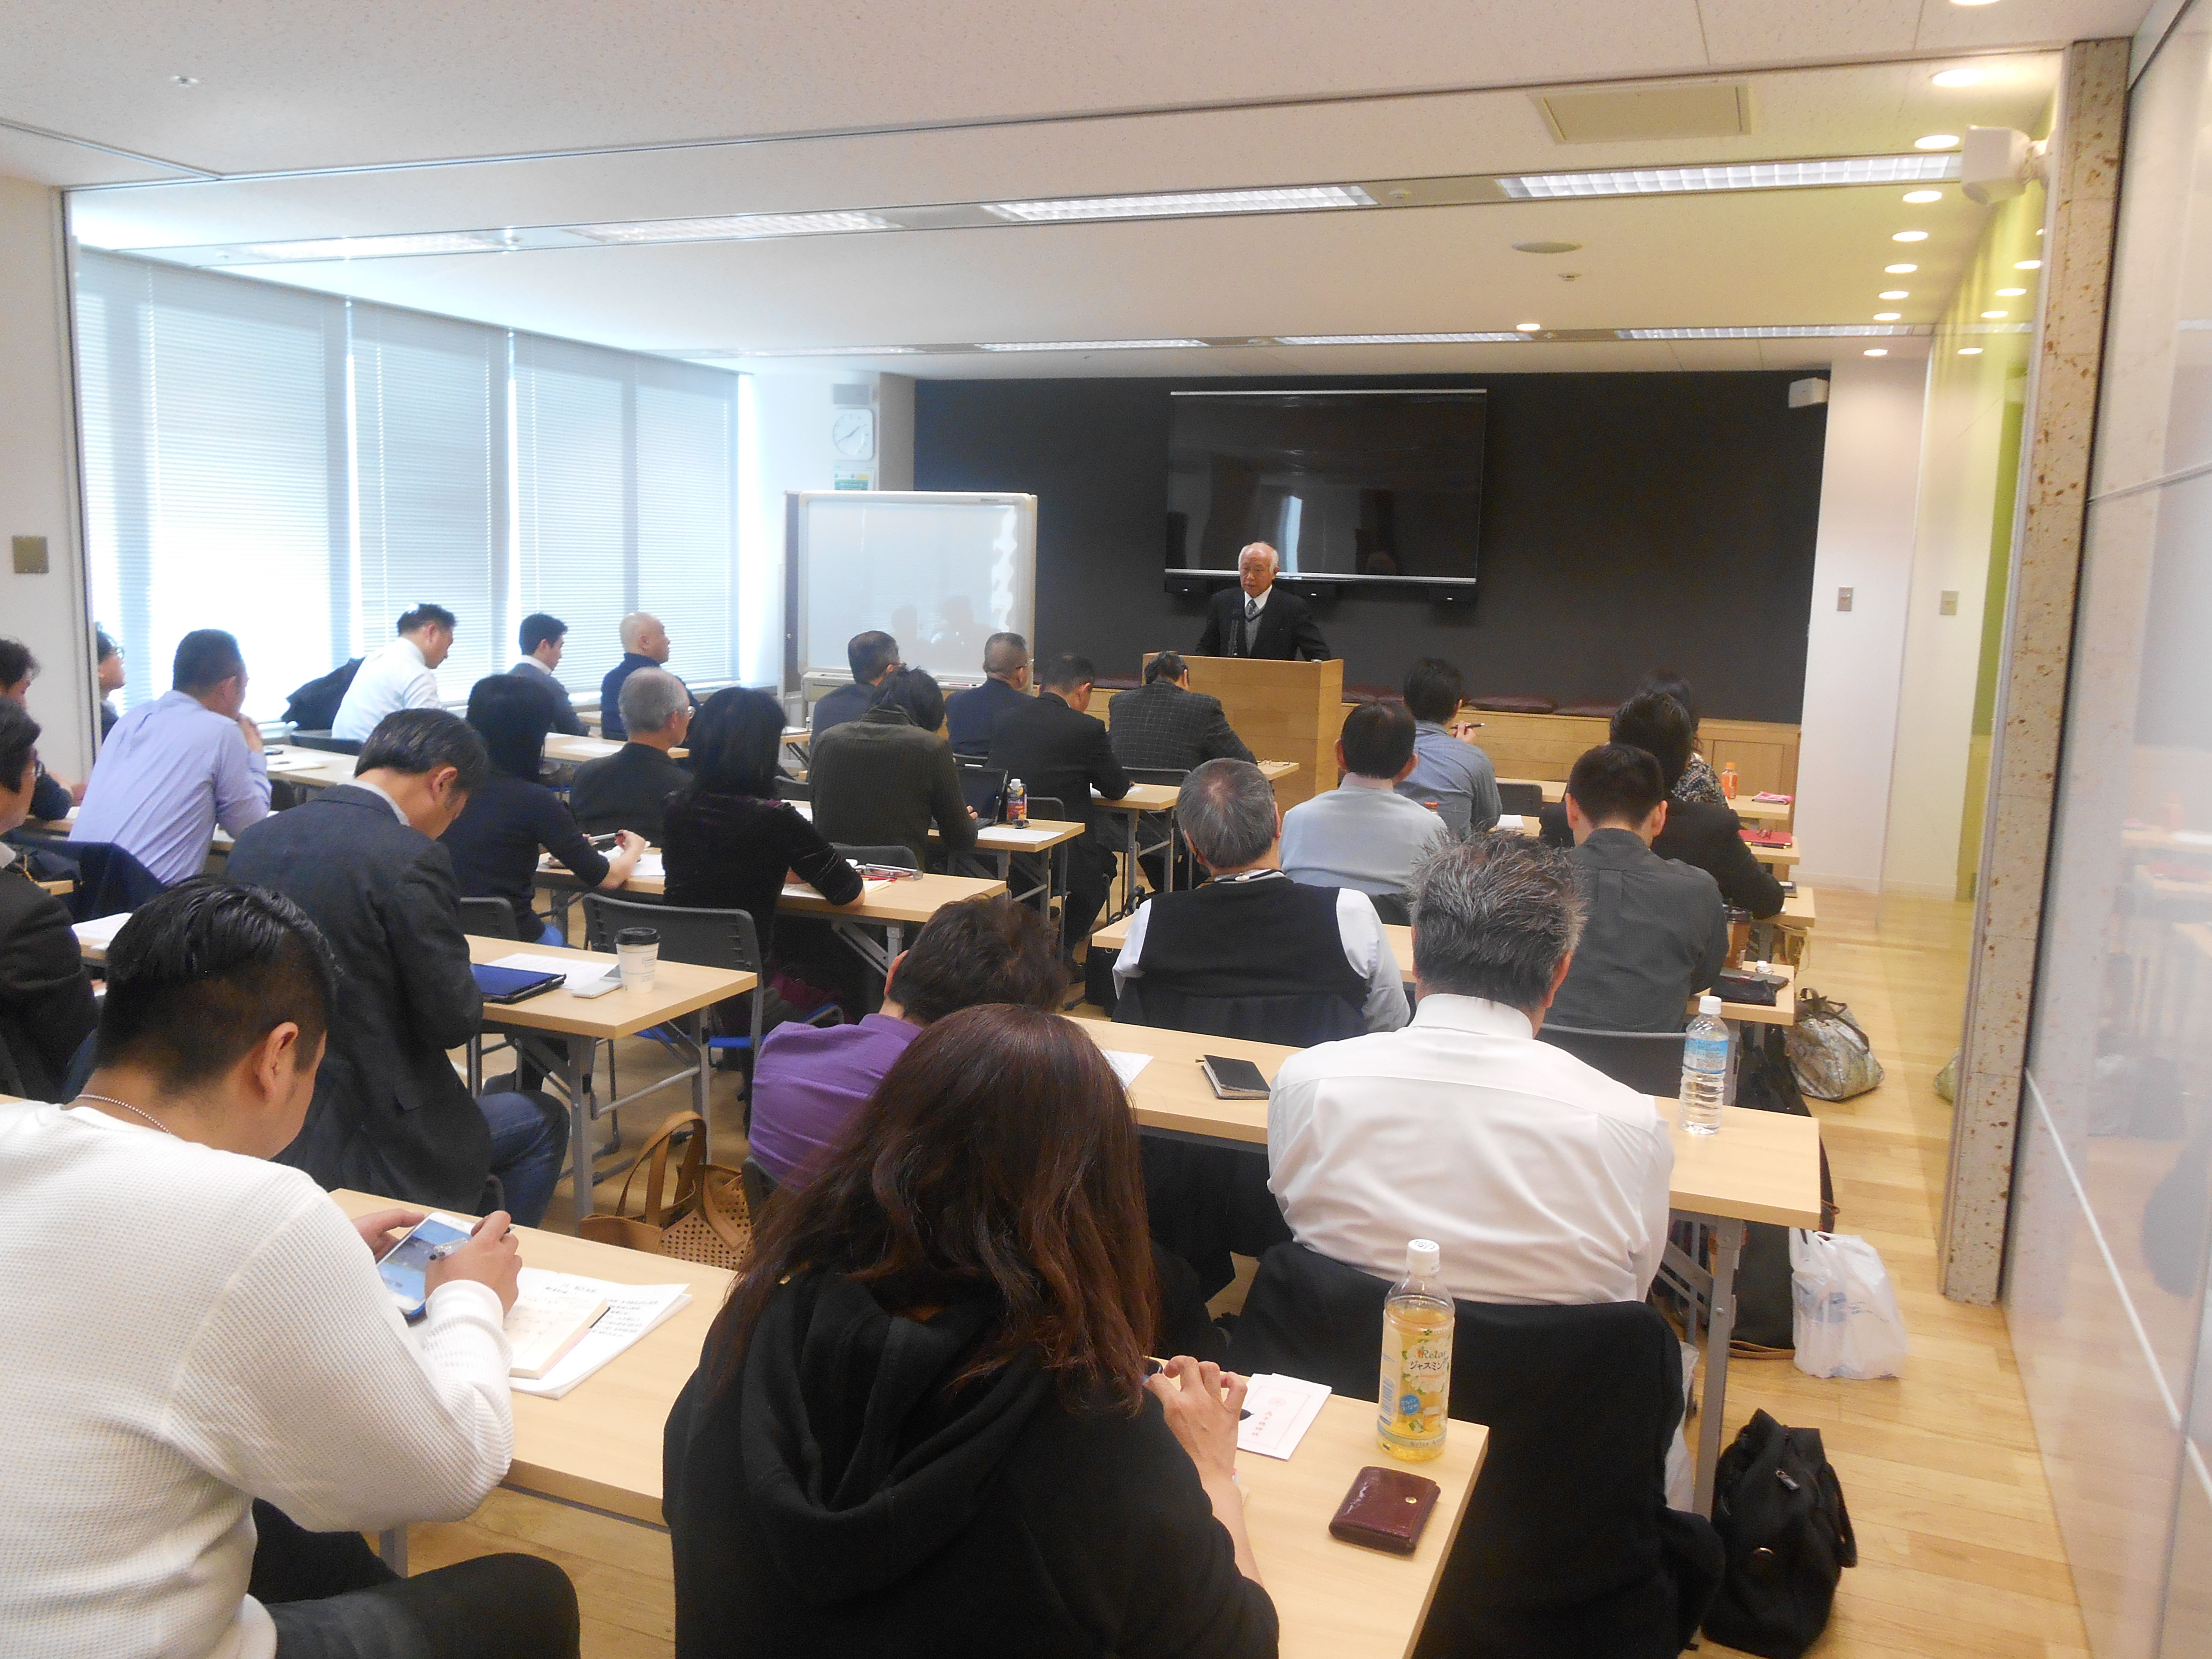 DSCN0040 - 平成29年度 東京思風塾2月4日開催しました。